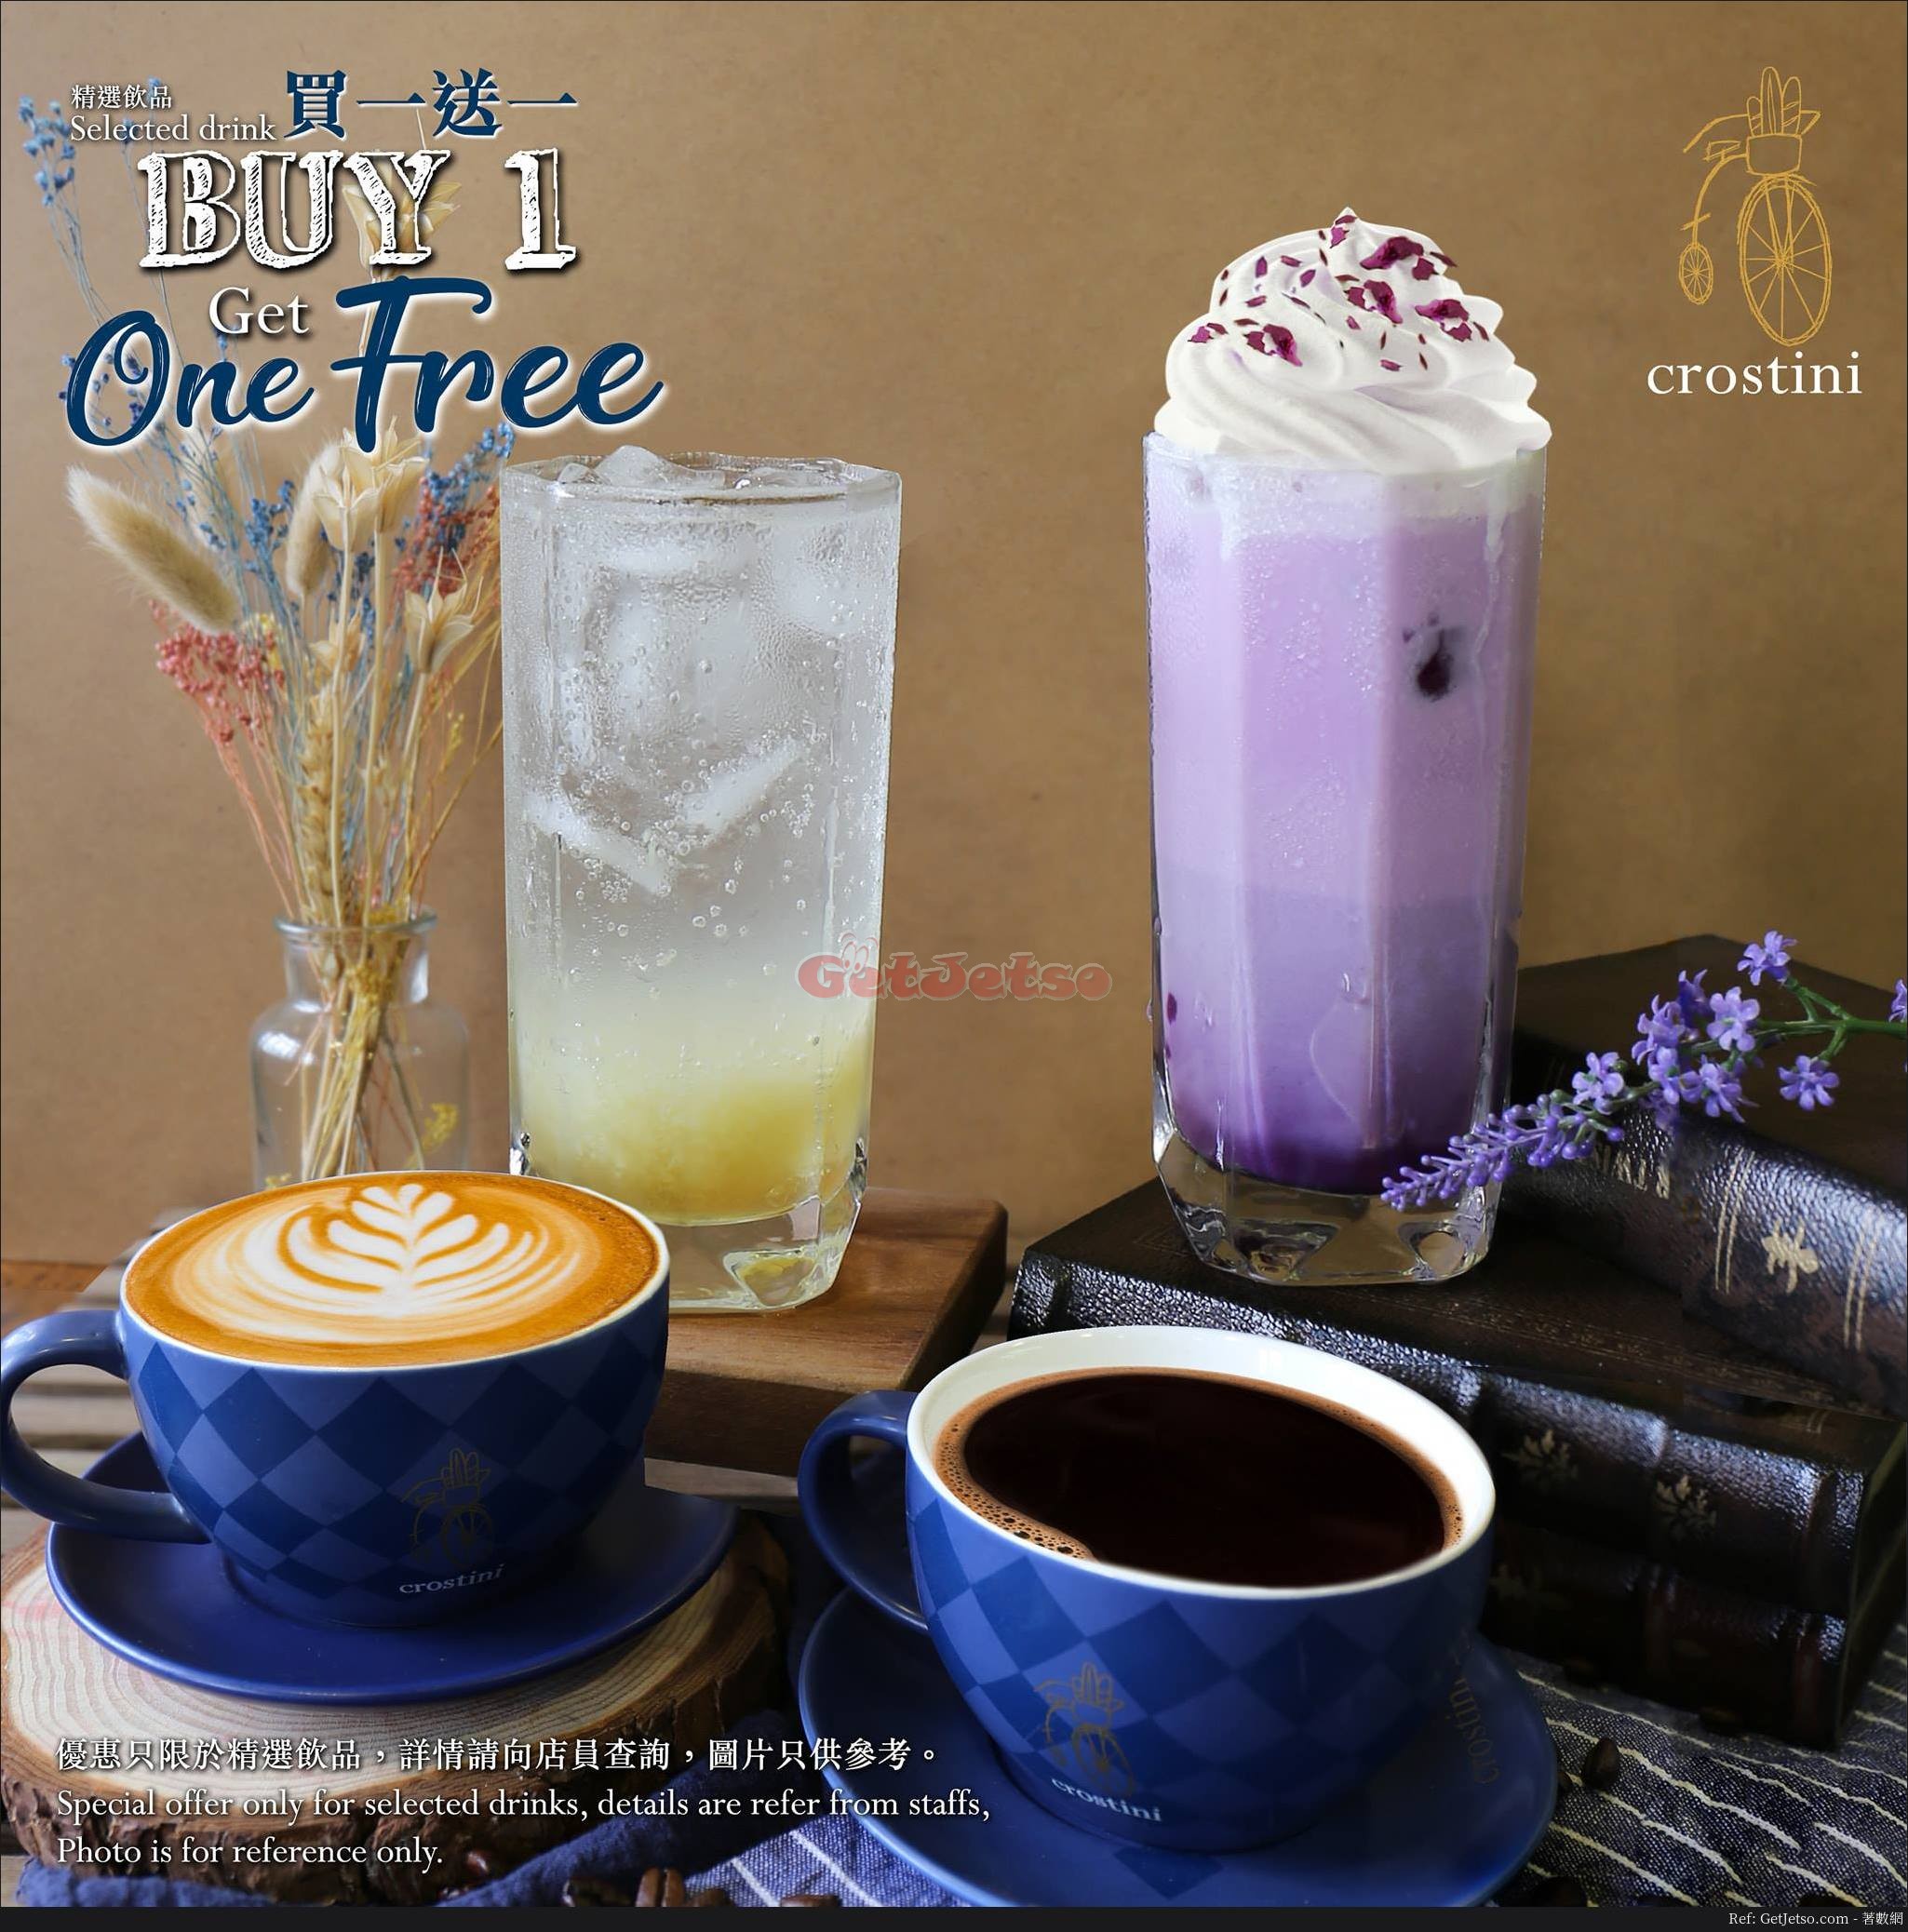 Crostini 凍紫薯鮮奶、熱鮮奶咖啡、熱美式咖啡買1送1優惠(18年12月7-9日)圖片1